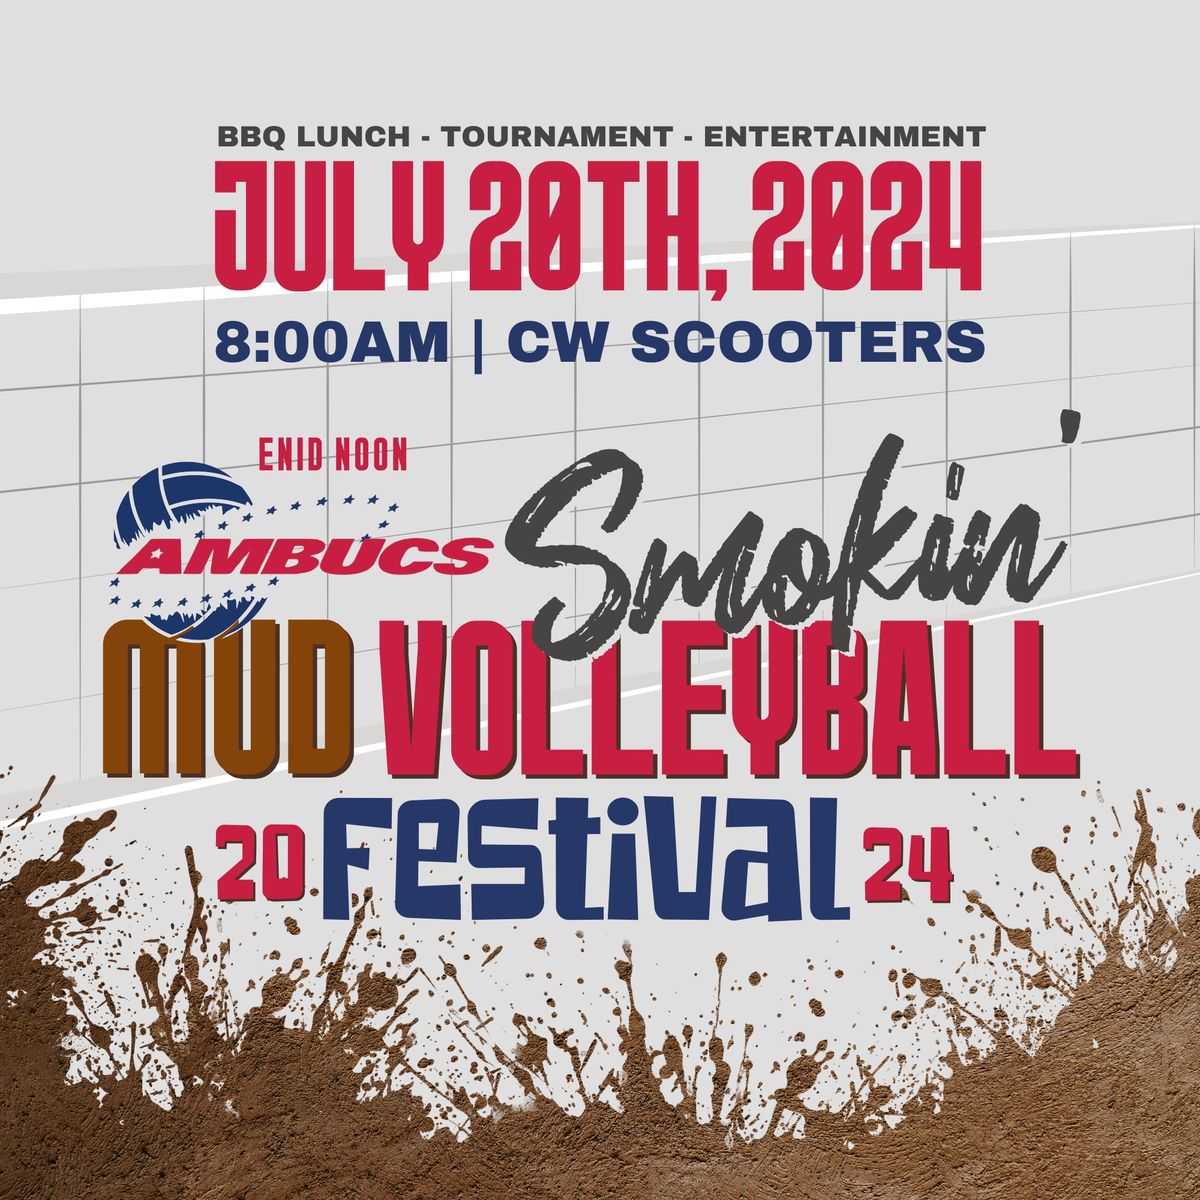 Enid Noon Ambucs Smokin\u2019 Mud Volleyball Festival